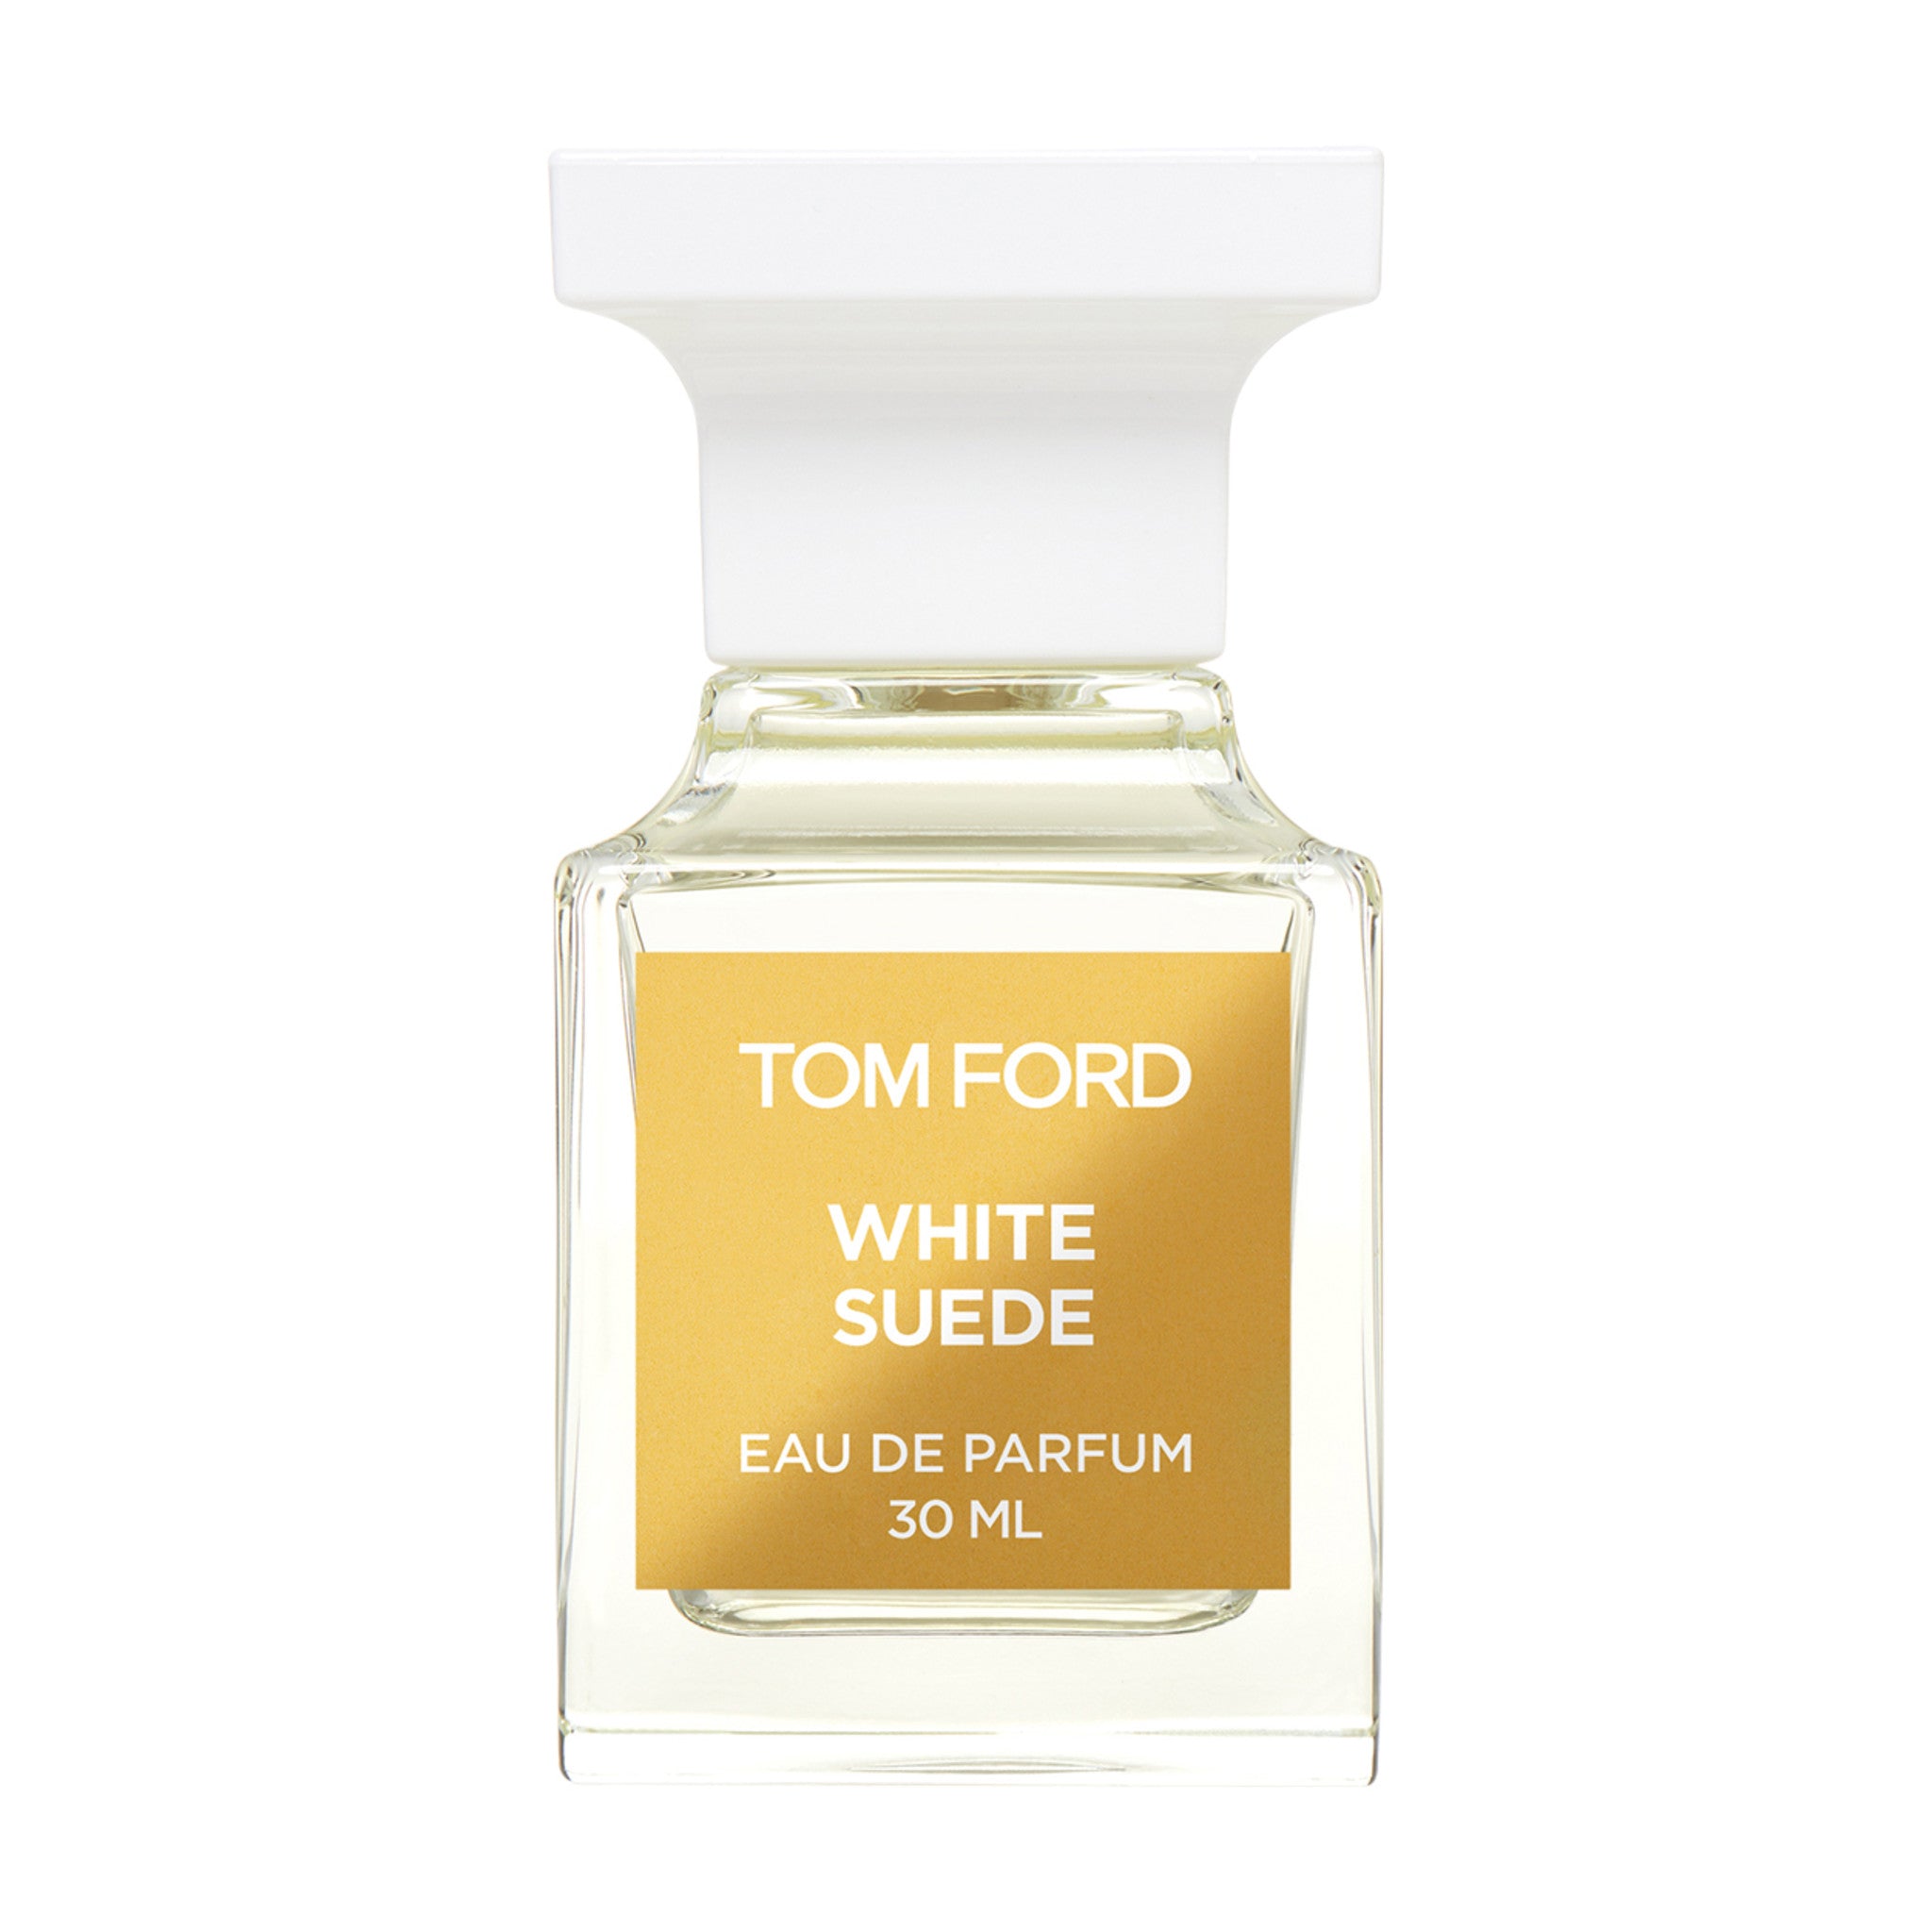 White Suede Eau de Parfum Spray main image.